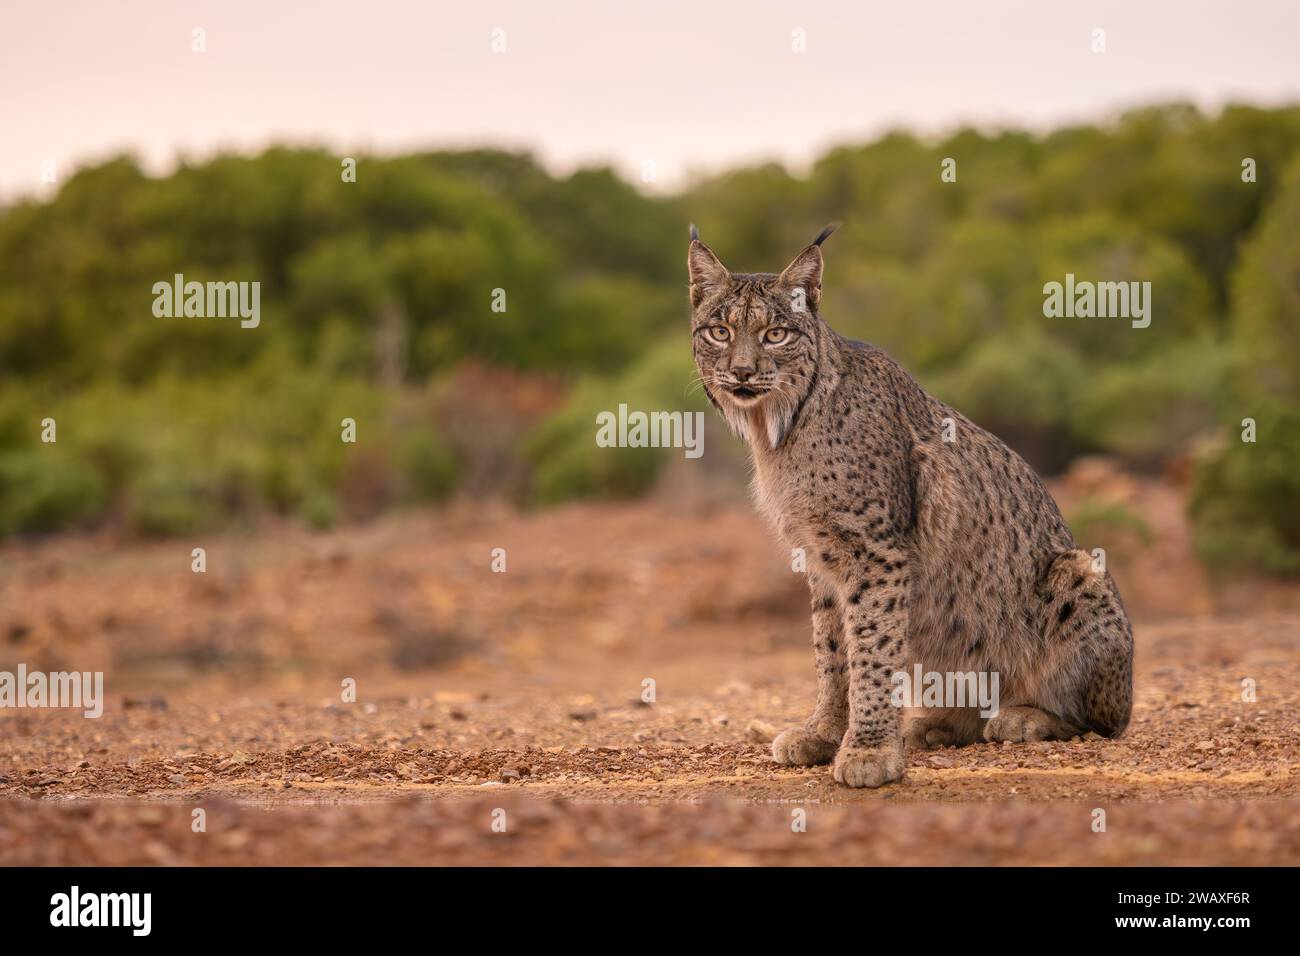 Lynx ibérique - Lynx pardinus, beau grand chat en danger critique d'extinction des forêts ibériques et des bois, Andalousie, Espagne. Banque D'Images